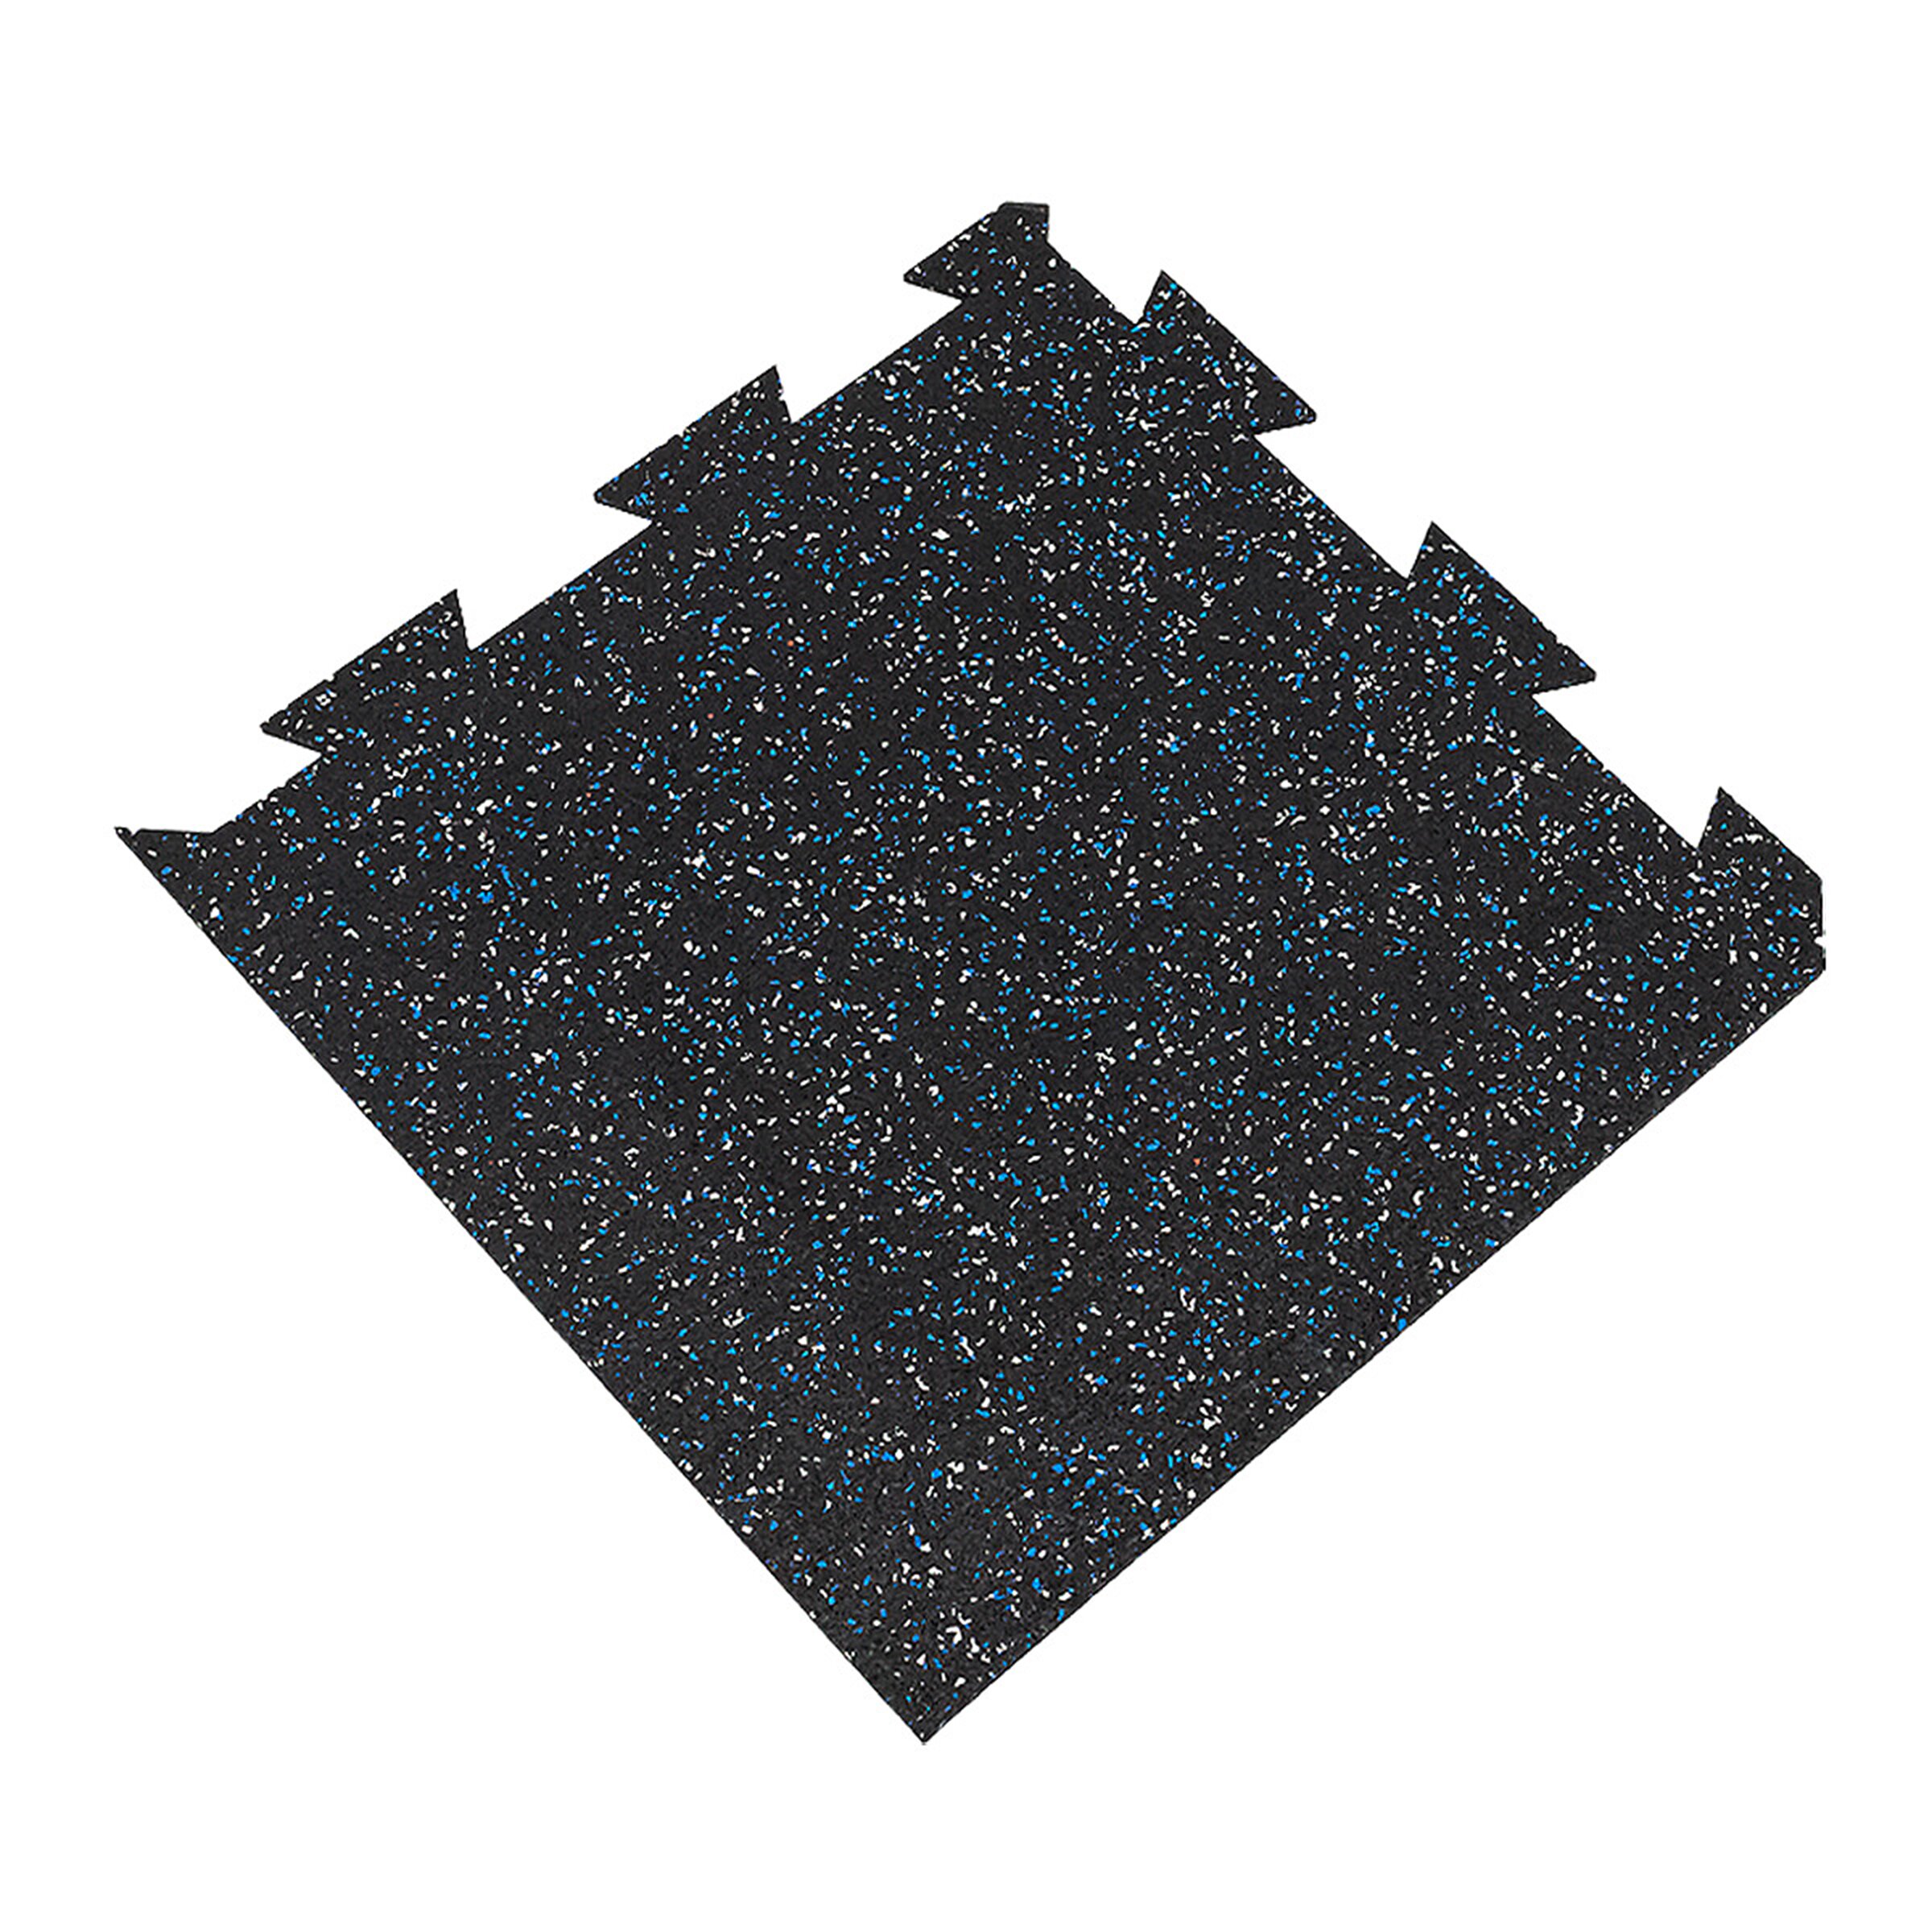 Černo-bílo-modrá podlahová guma FLOMA FitFlo SF1050 - délka 50 cm, šířka 50 cm, výška 1 cm